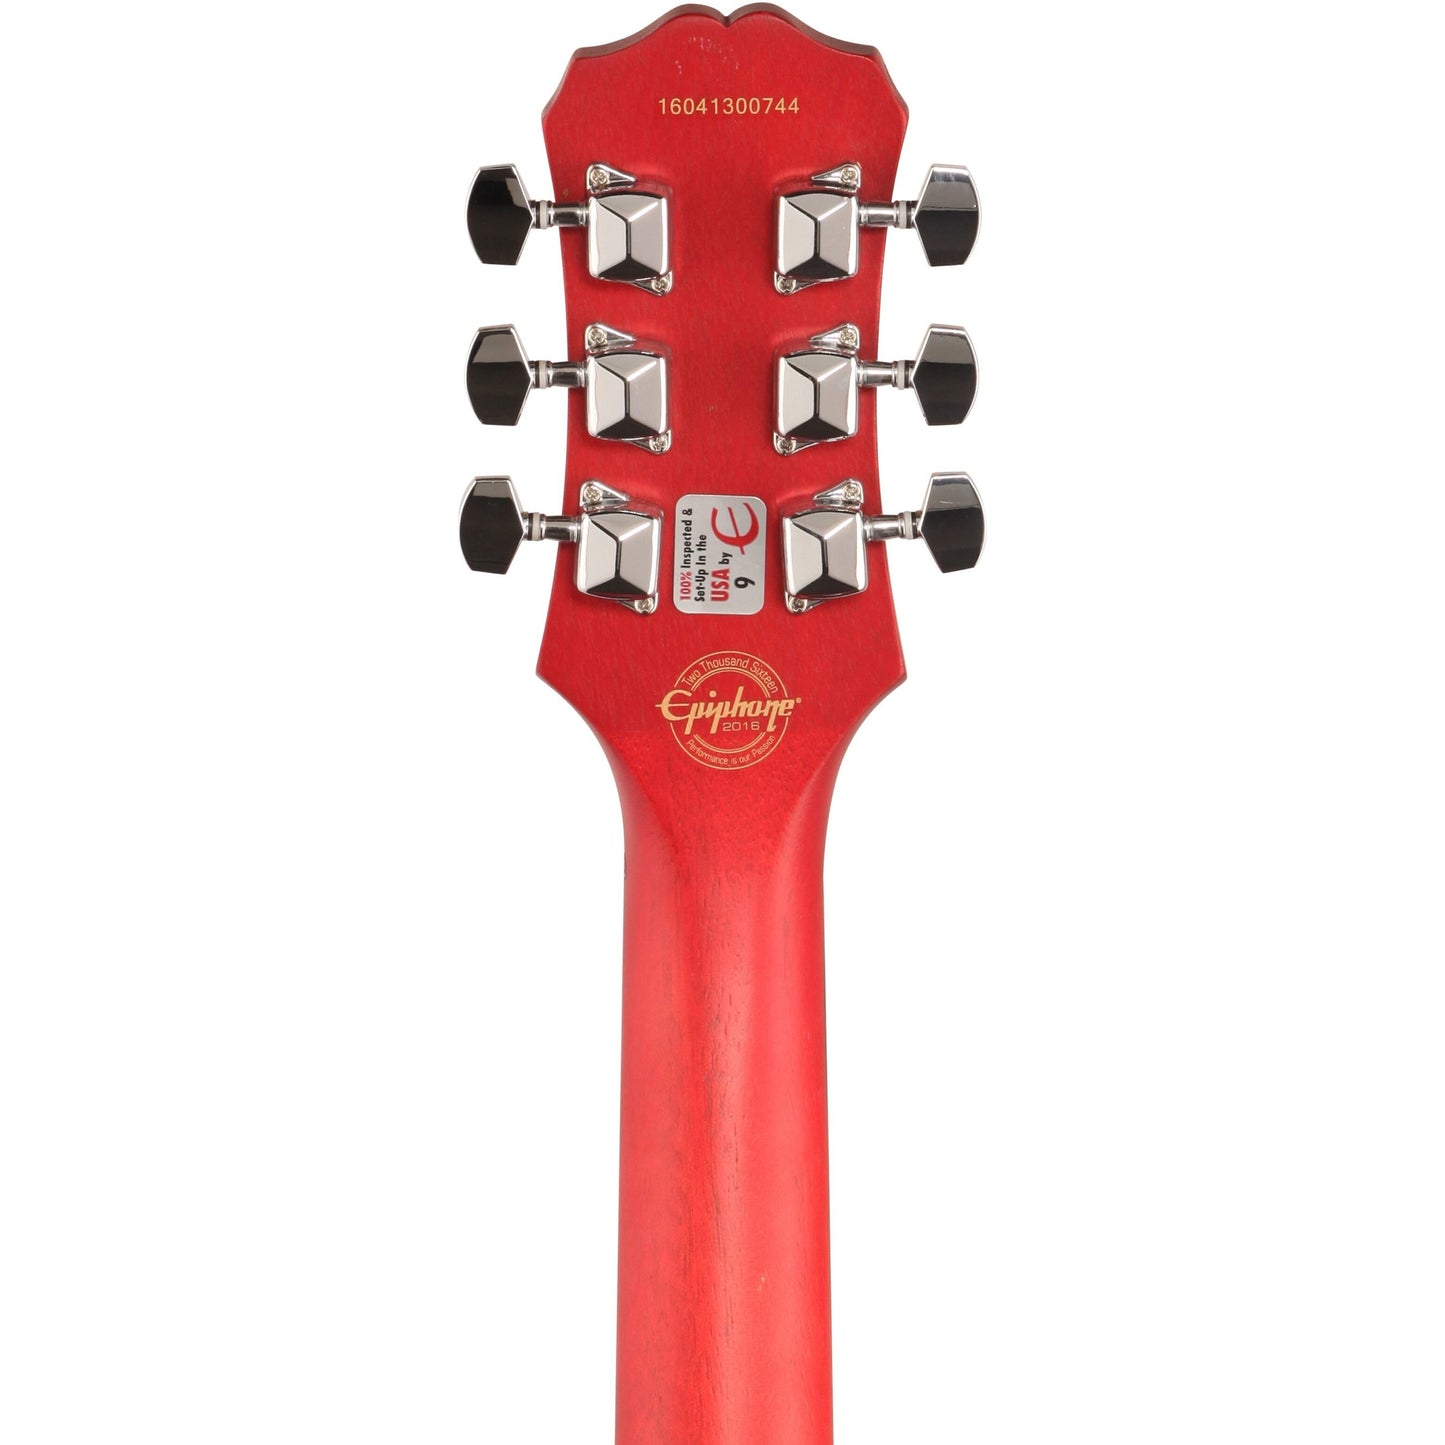 Epiphone Les Paul Special VE Electric Guitar, Vintage Cherry Sunburst